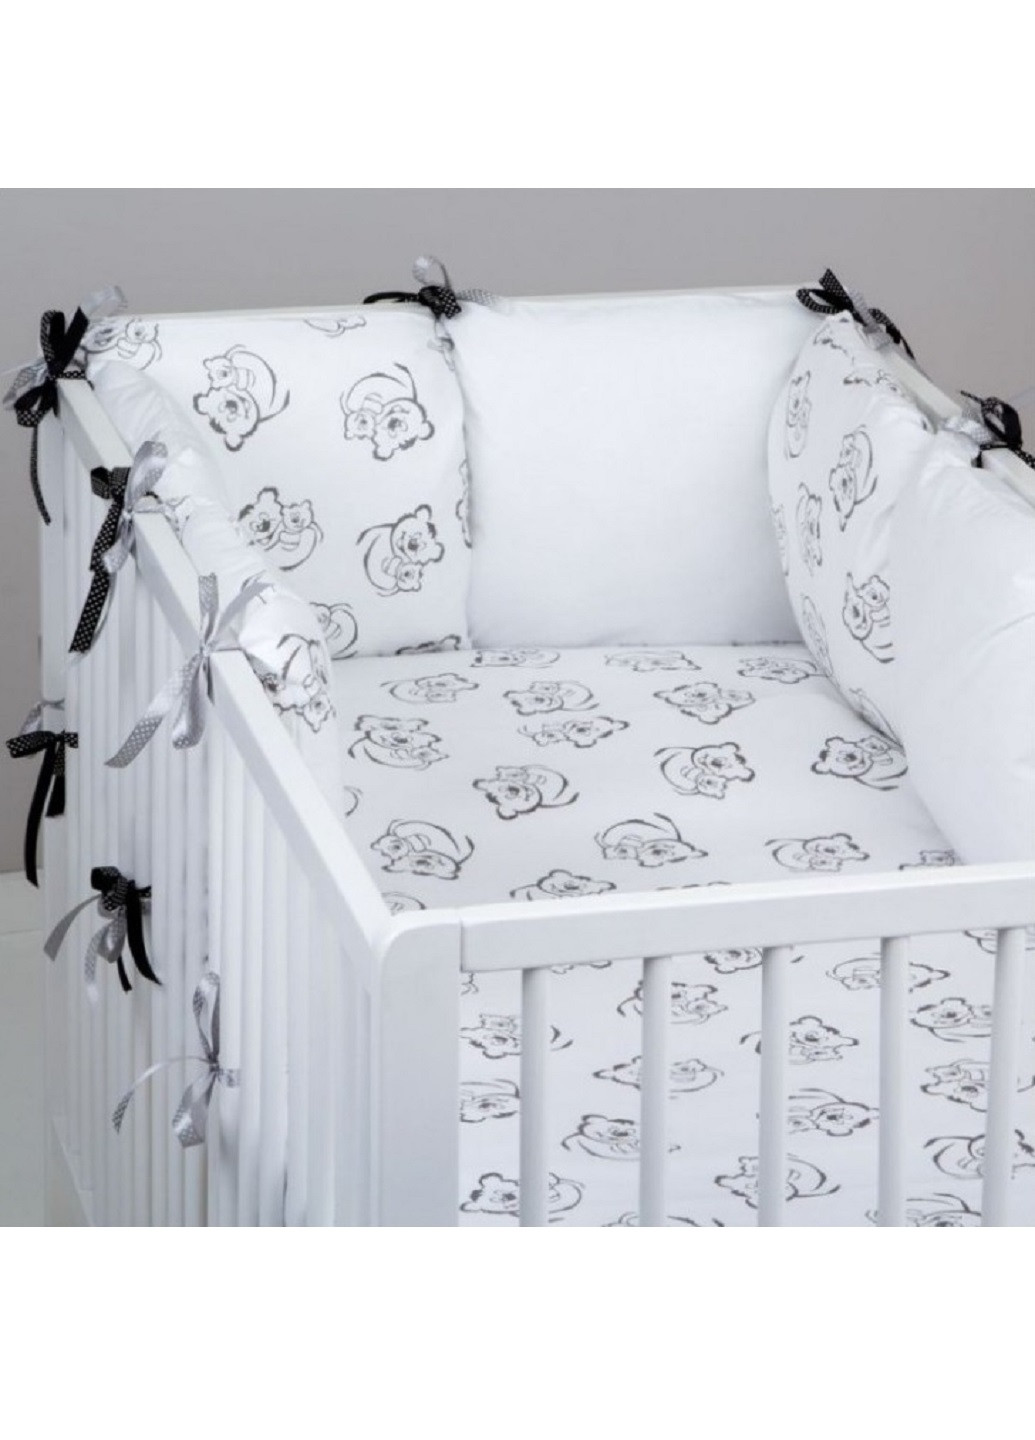 Комплект в детскую кроватку кровать люльку набор бортики защита на три стороны постельное белье ручной работы (28587-Нов) Unbranded (253196438)